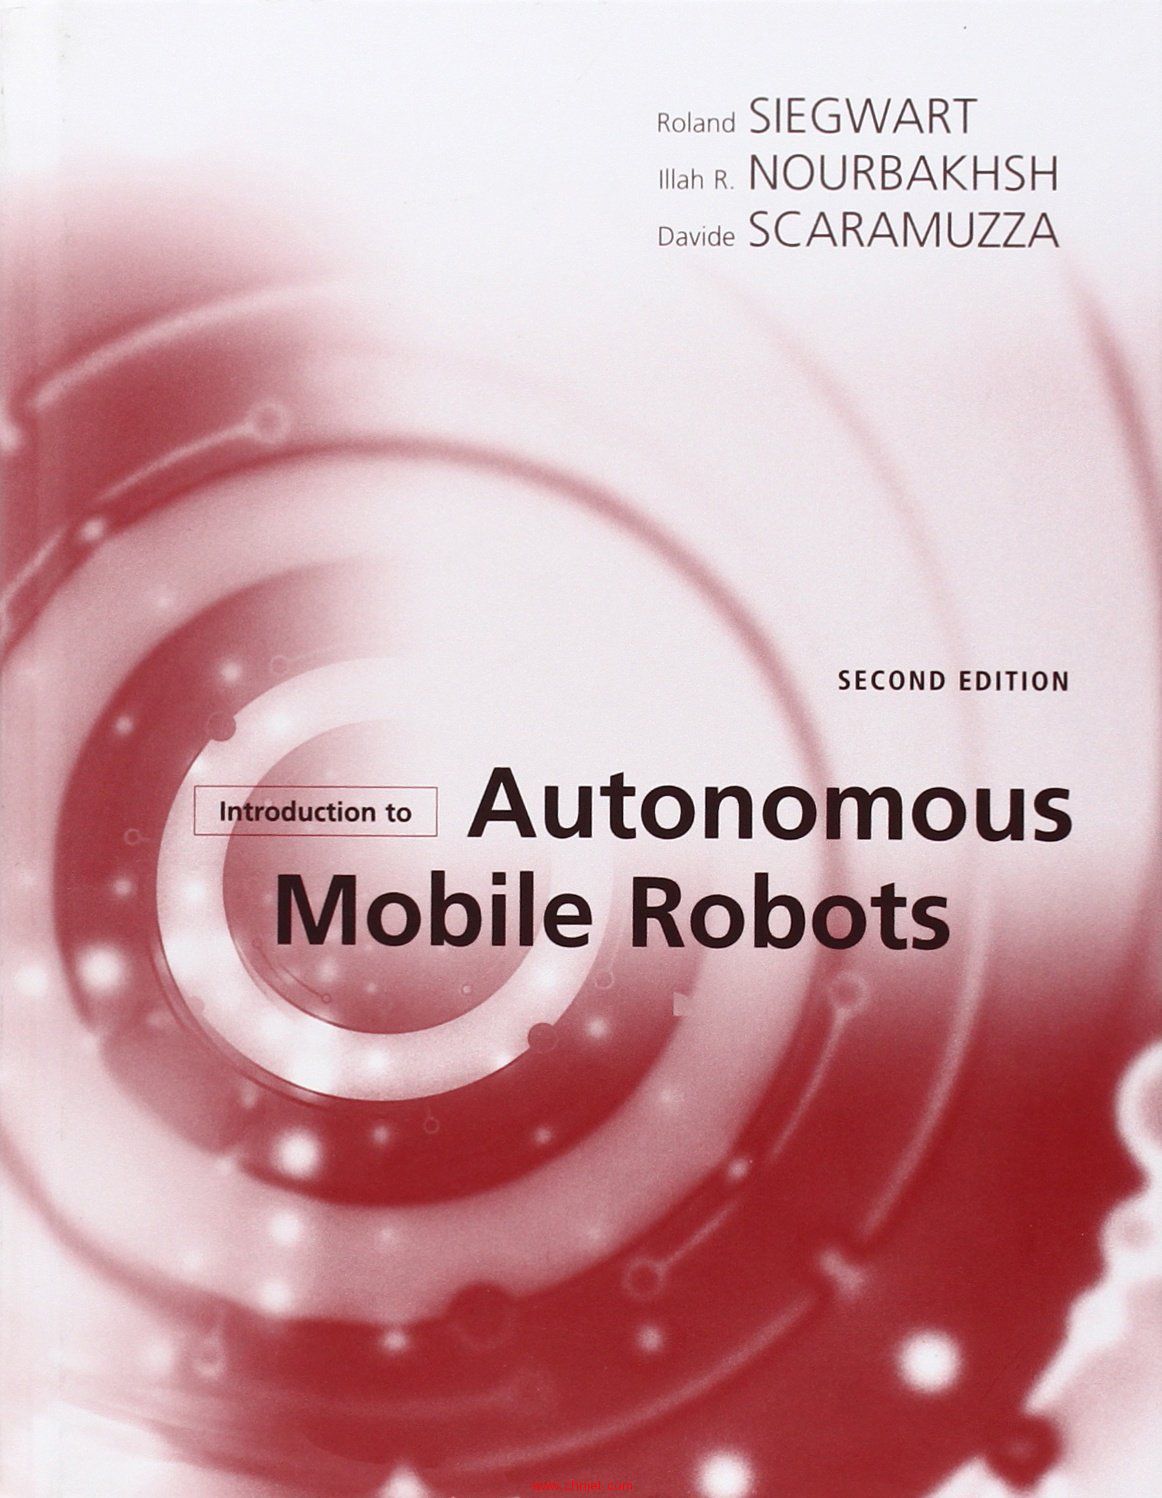 《Introduction to Autonomous Mobile Robots》第二版